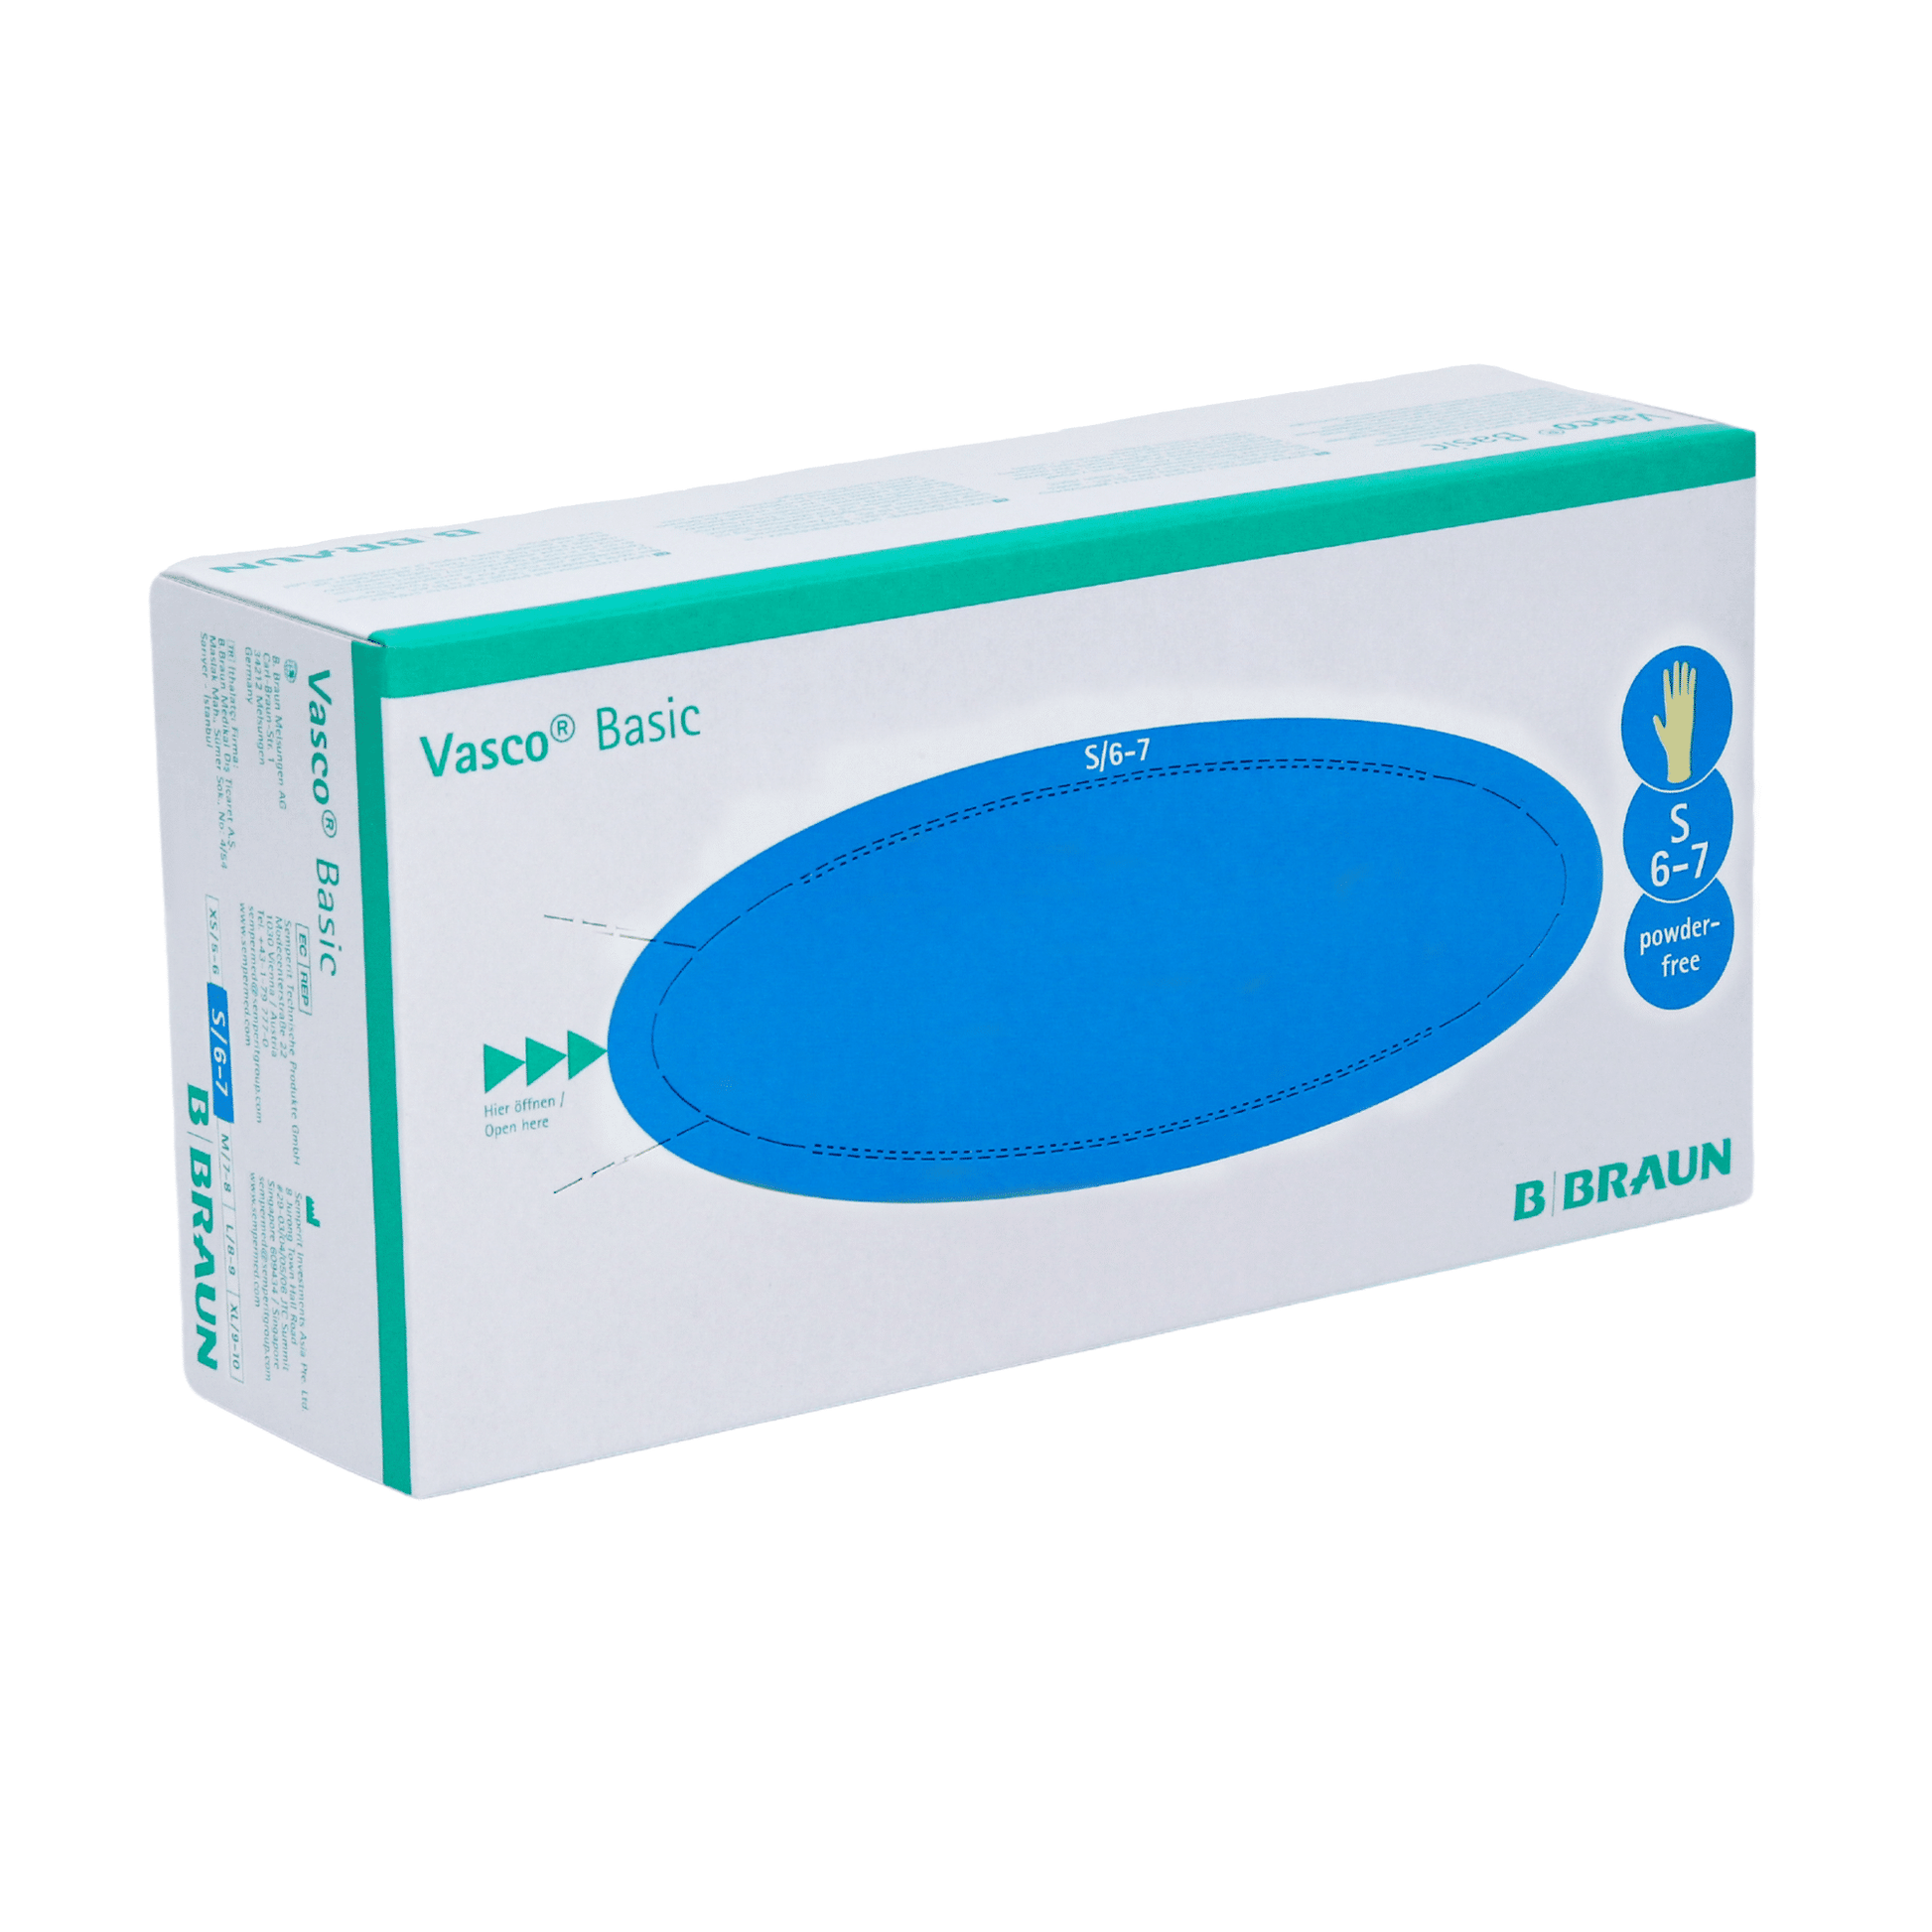 Eine Schachtel Vasco® Basic Untersuchungshandschuhe von B. Braun Melsungen AG, Größe S 5-6. Die Schachtel ist blaugrün und weiß mit Markenaufdruck und Angaben zur Handschuhgröße.